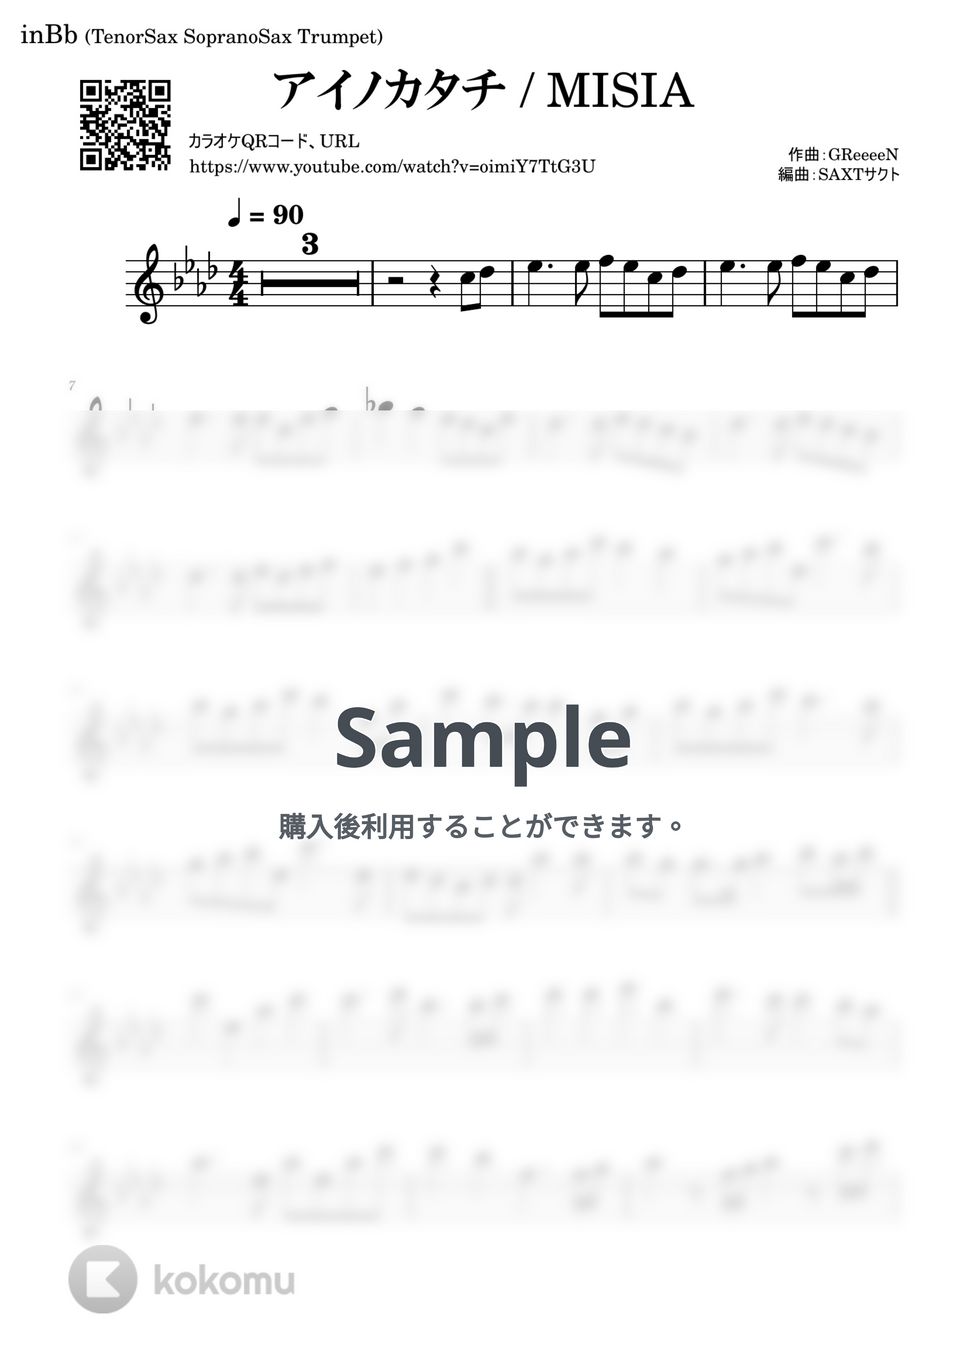 MISIA - アイノカタチ (カラオケで吹ける!!) by saxt